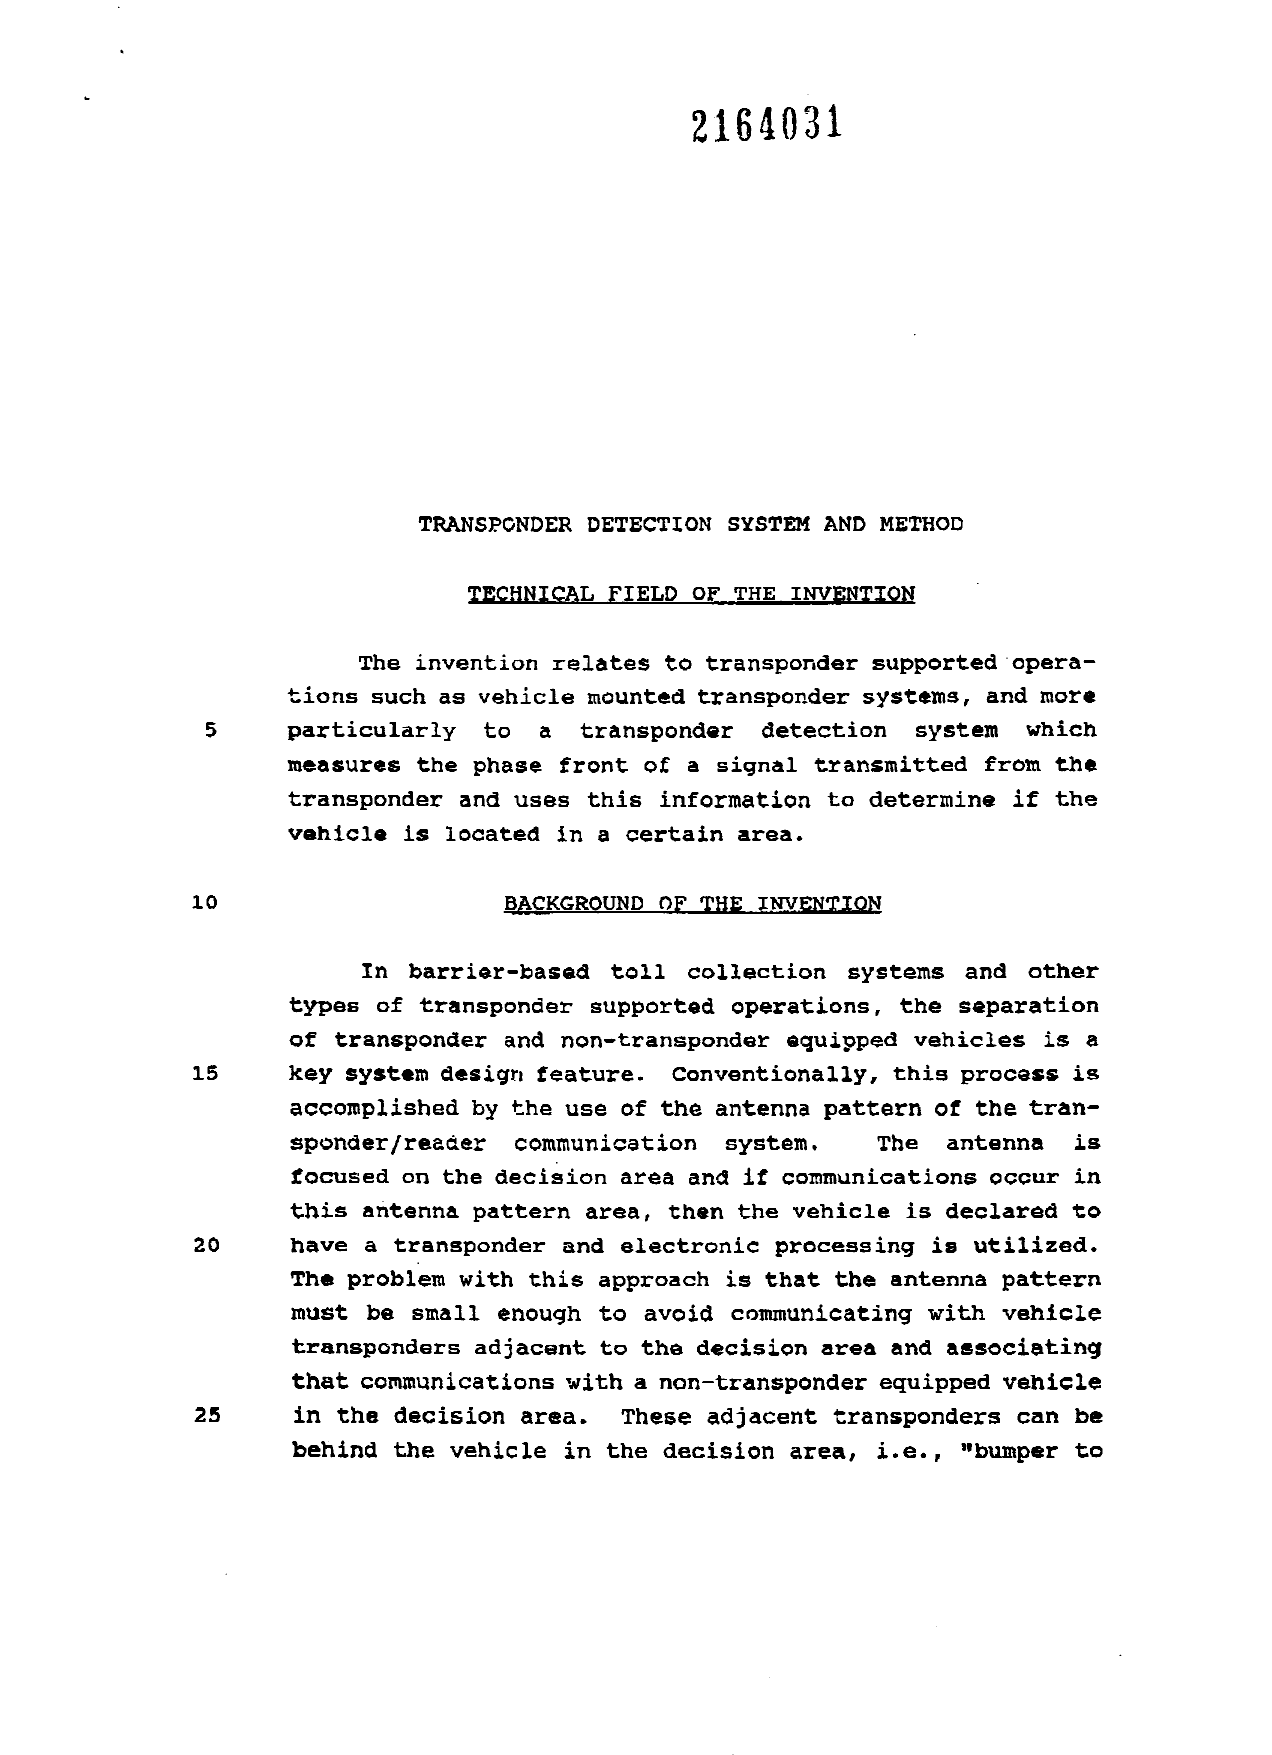 Document de brevet canadien 2164031. Description 19960424. Image 1 de 21